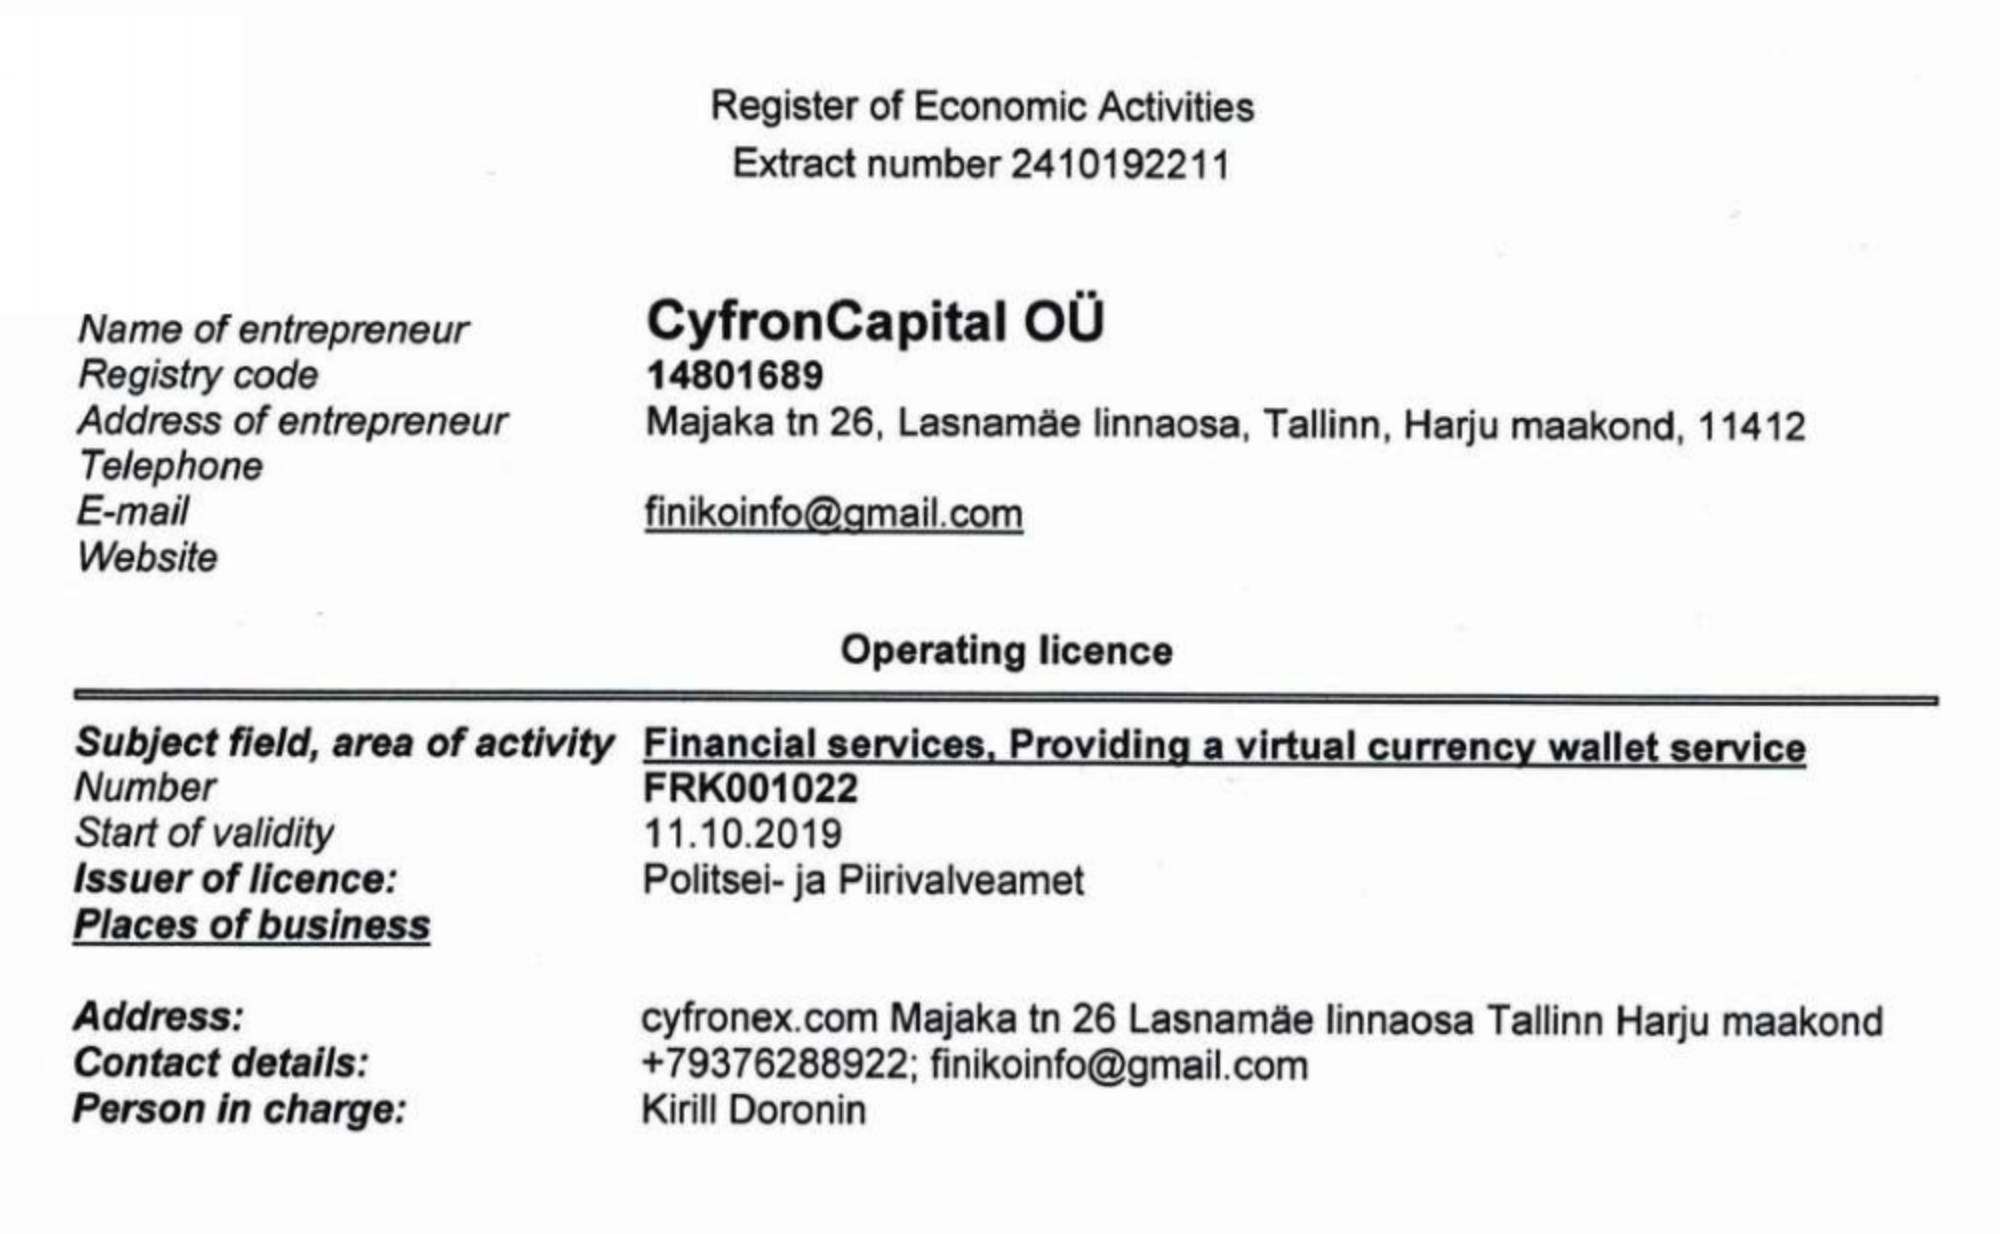 Сайт thefiniko.com указывает в качестве юрлица компанию CyfronCapital OÜ, которая зарегистрирована в Эстонии и имеет лицензию на финансовую деятельность